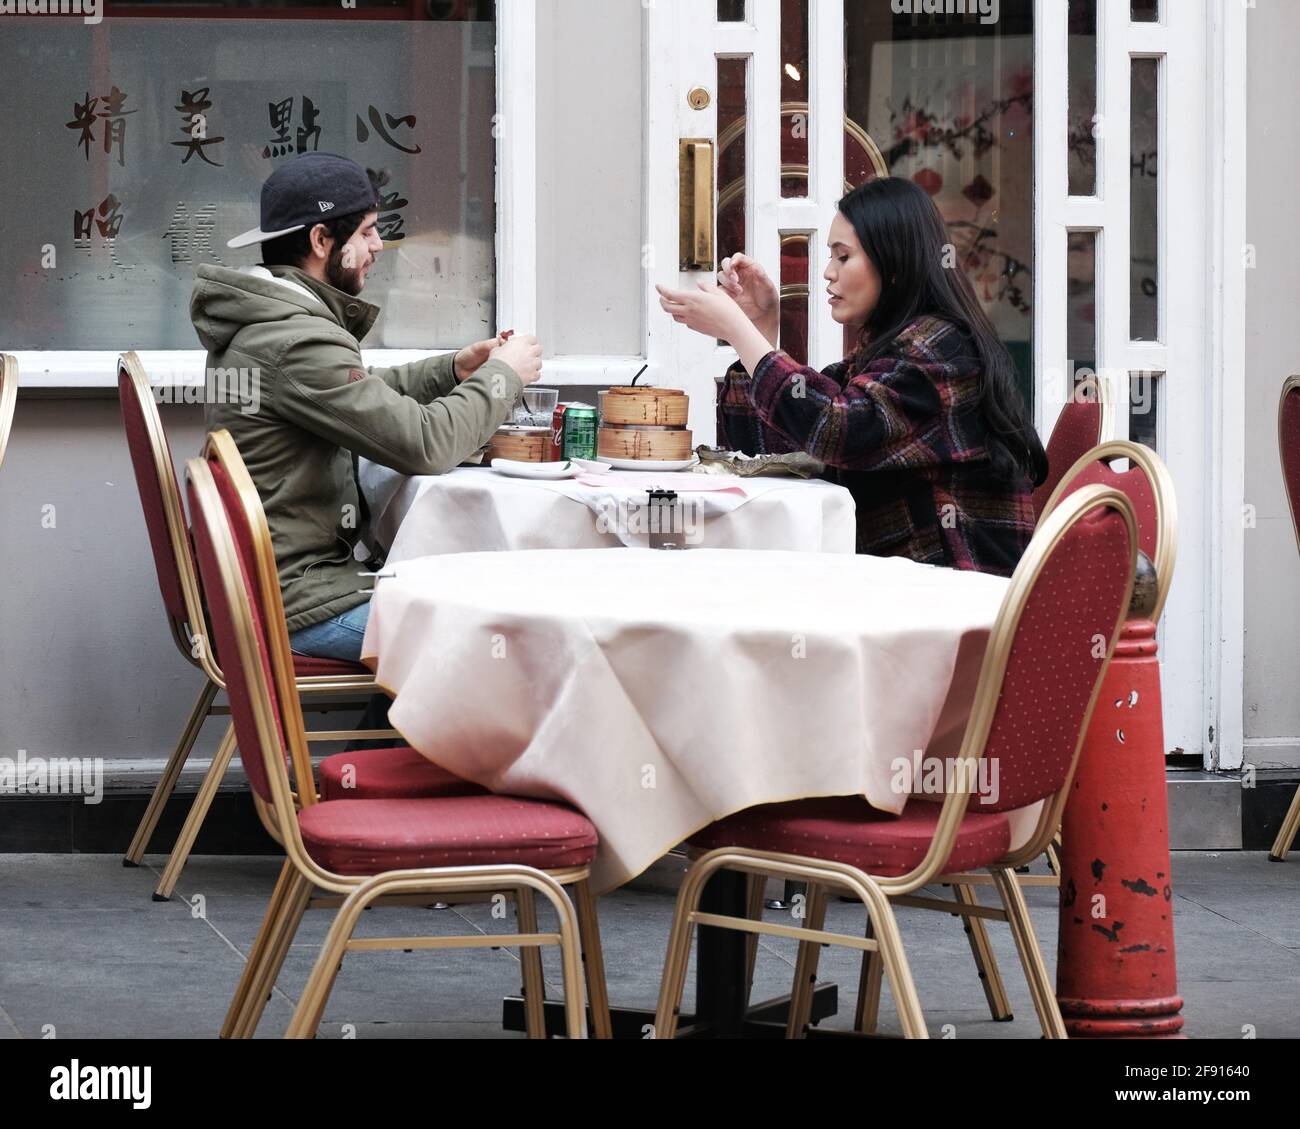 Deux convives assis sur une table sur le trottoir apprécient dimsum dans le quartier chinois de Londres, tandis que les restrictions du coronavirus se soulagées et que l'hospitalité en plein air revient en Angleterre. Banque D'Images